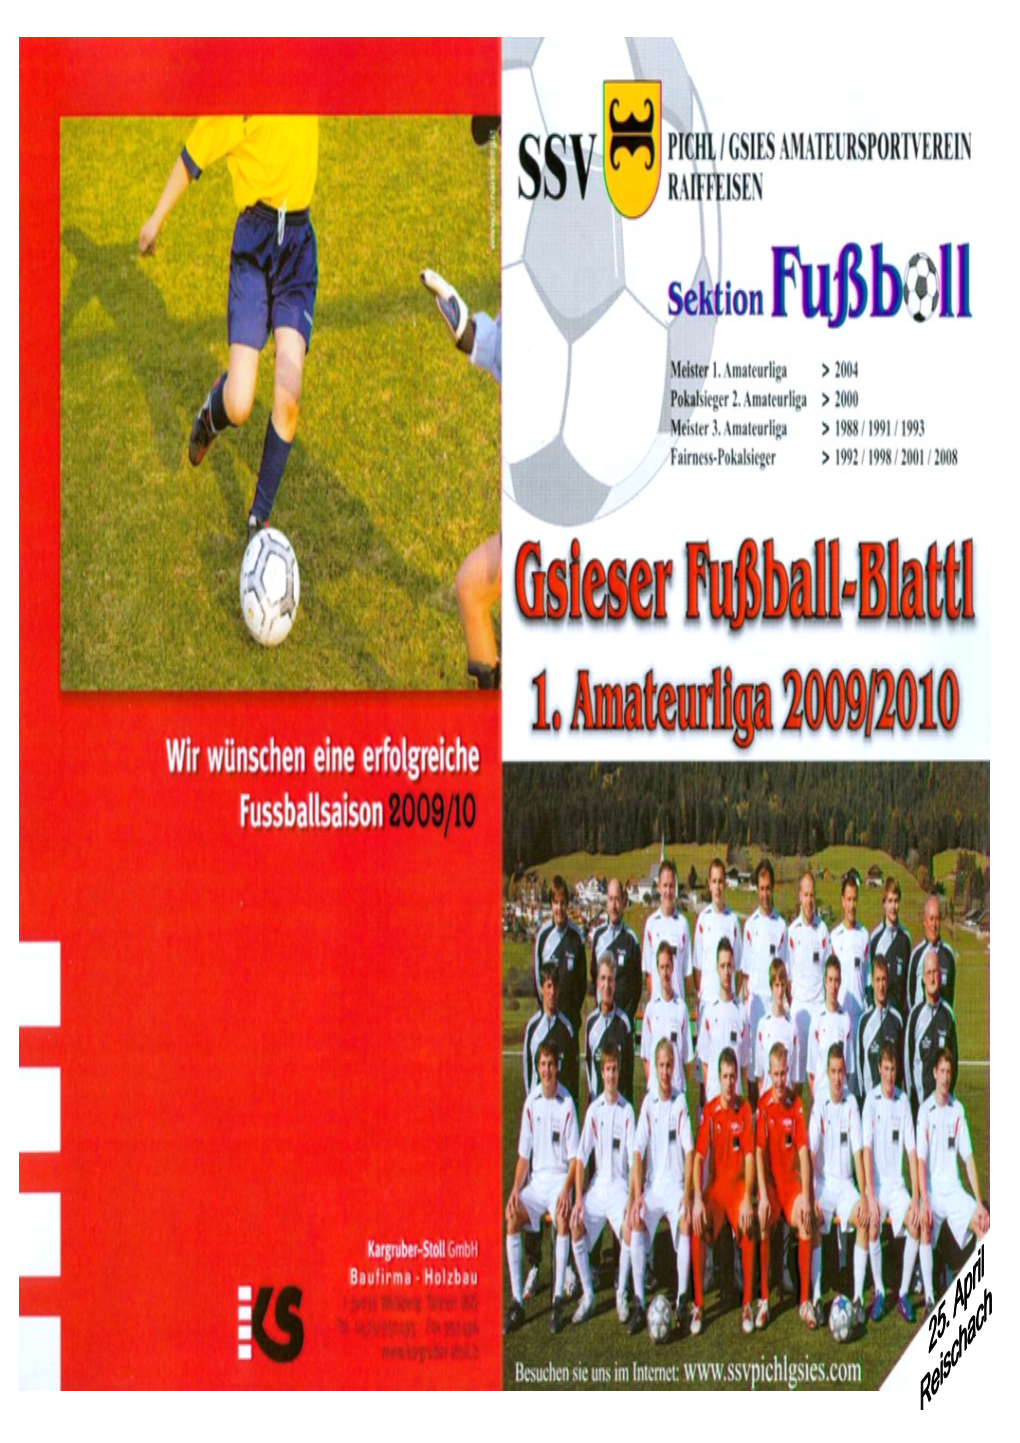 Gsieser Fussball-Blattl Vom 25. April Reischach .Pdf